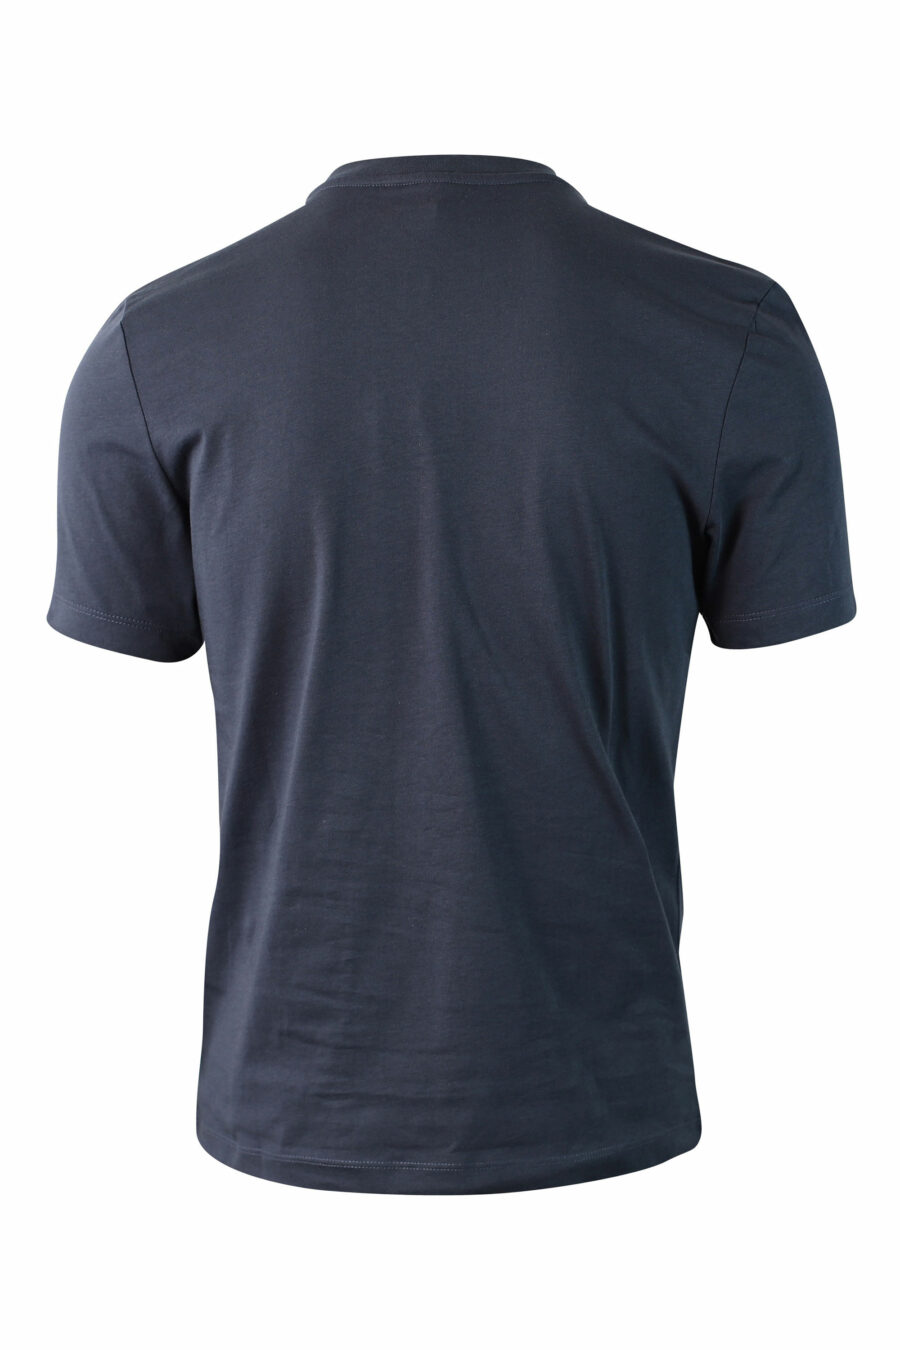 Camiseta azul con maxilogo monocromático - IMG 0045